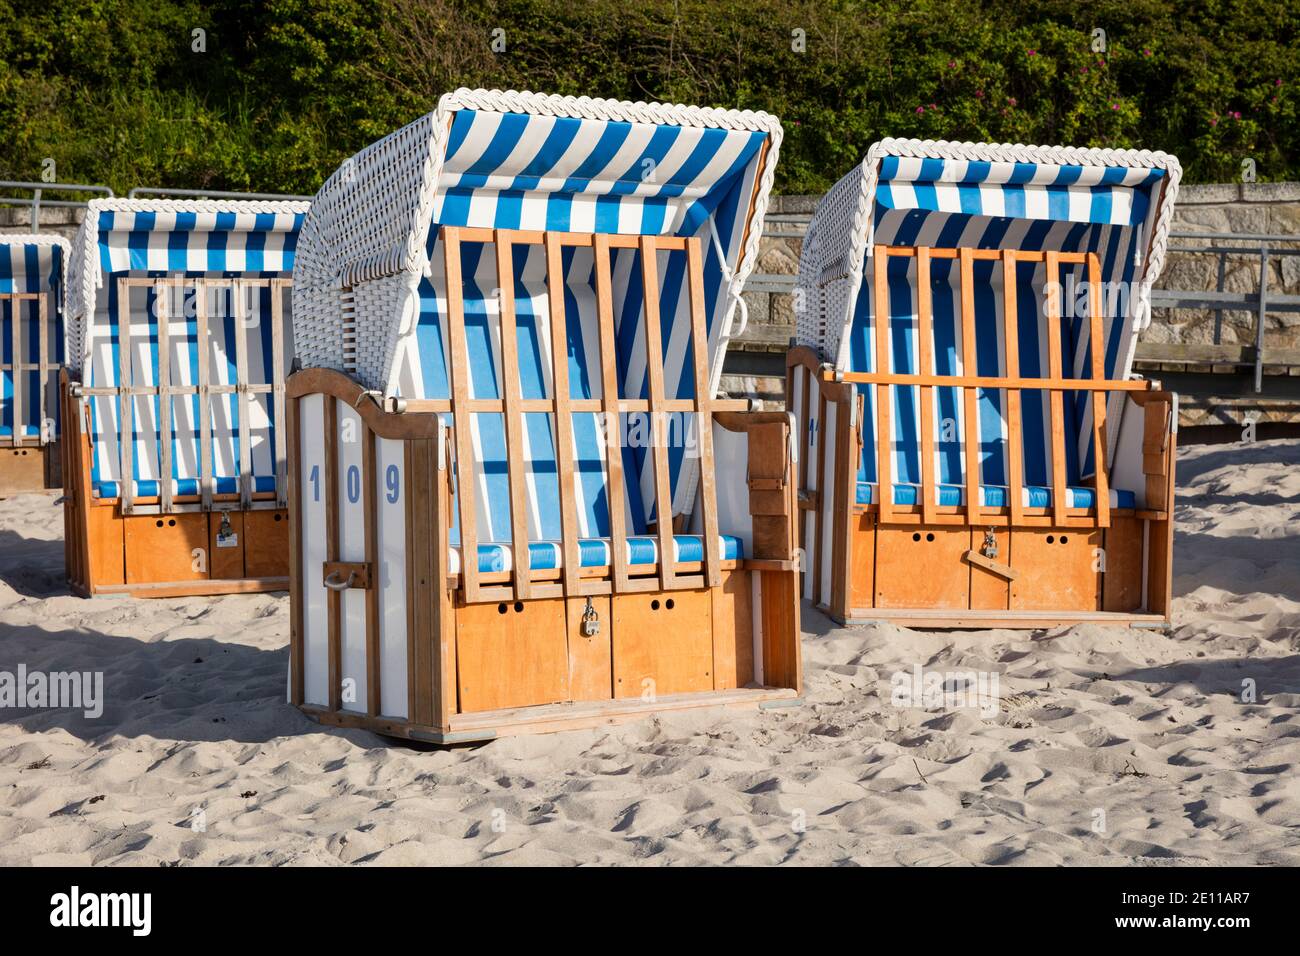 Chaise de plage, Mer Baltique côte mecklembourgeoise, Mecklenburg-Ouest Pomerania, Allemagne, Europe Banque D'Images